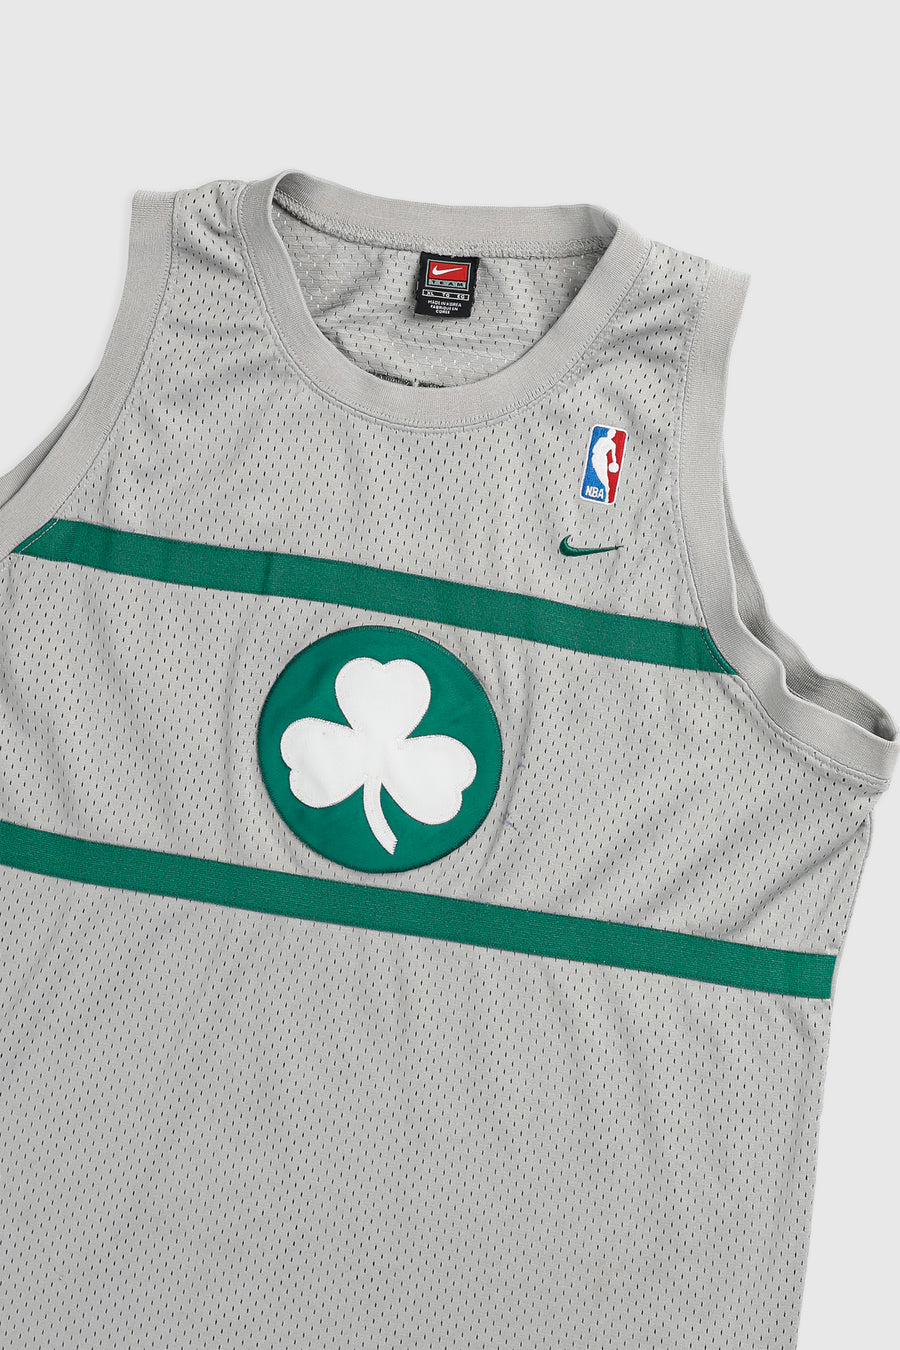 Vintage Boston Celtics NBA Jersey - XL